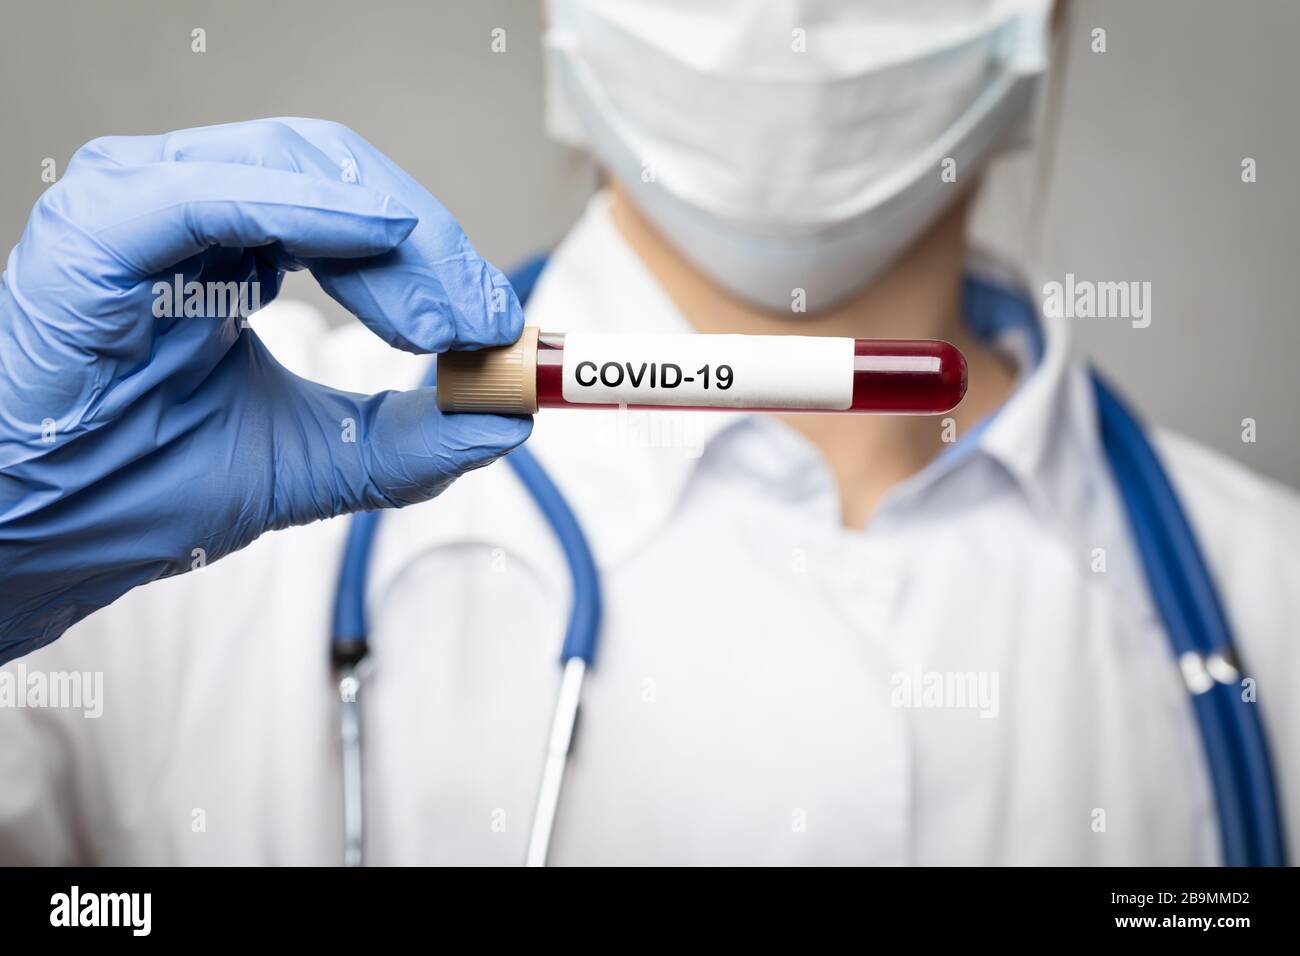 Nahaufnahme des Arztes mit chirurgischer Schutzmaske und Handschuhen zur Aufnahme des Coronavirus Disease 2019 (COVID-19)-Tests oder des Impfstoffröhrchens - Epidemievirus Stockfoto